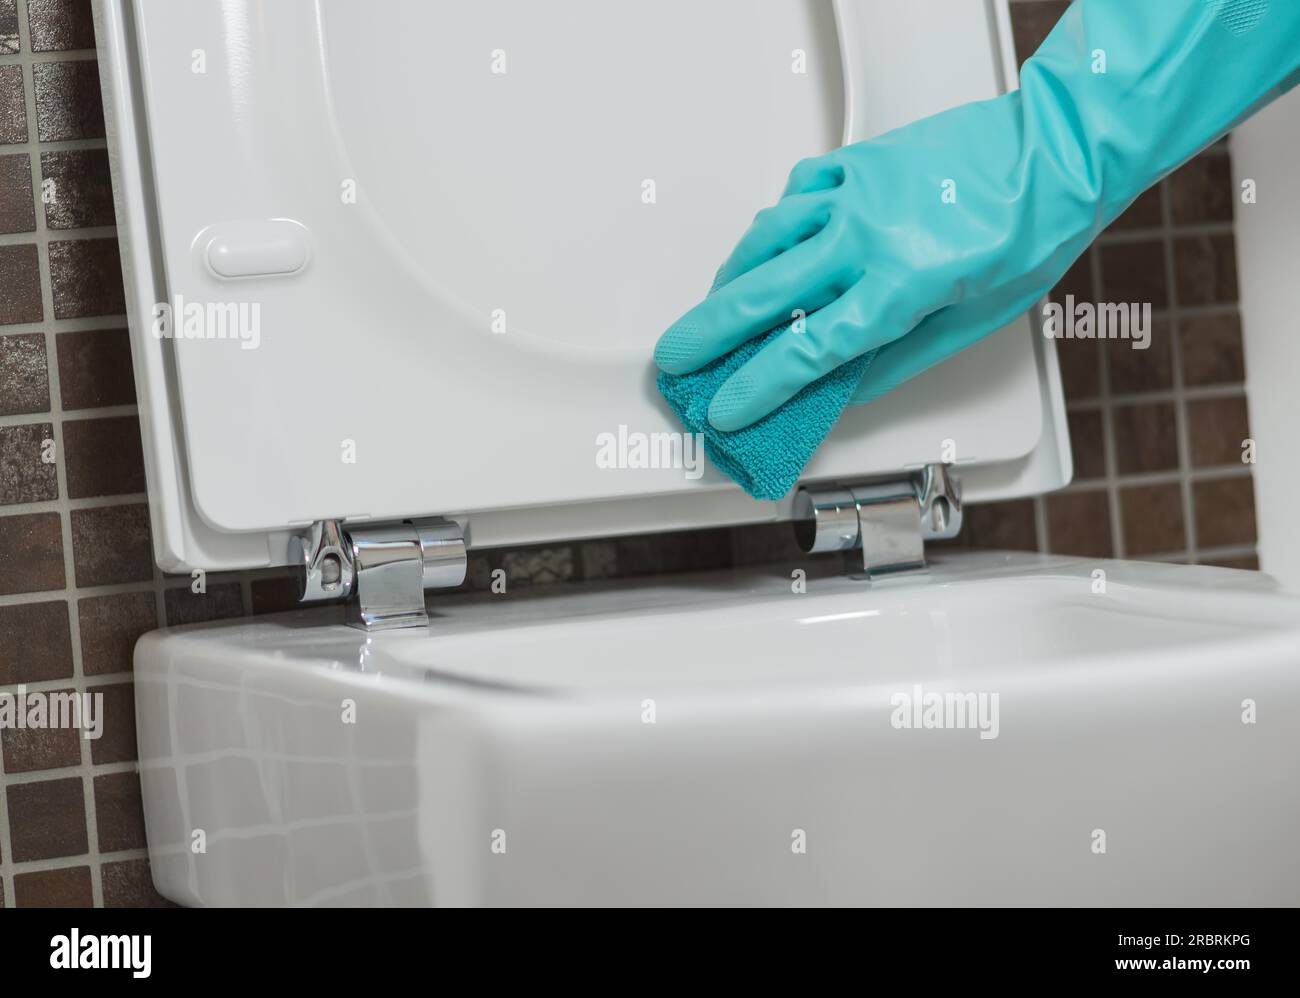 Main d'une personne nettoyant le siège de toilette dans des gants en caoutchouc avec une éponge désinfectant le dessous pour les germes et les bactéries tout en effectuant le ménage Banque D'Images